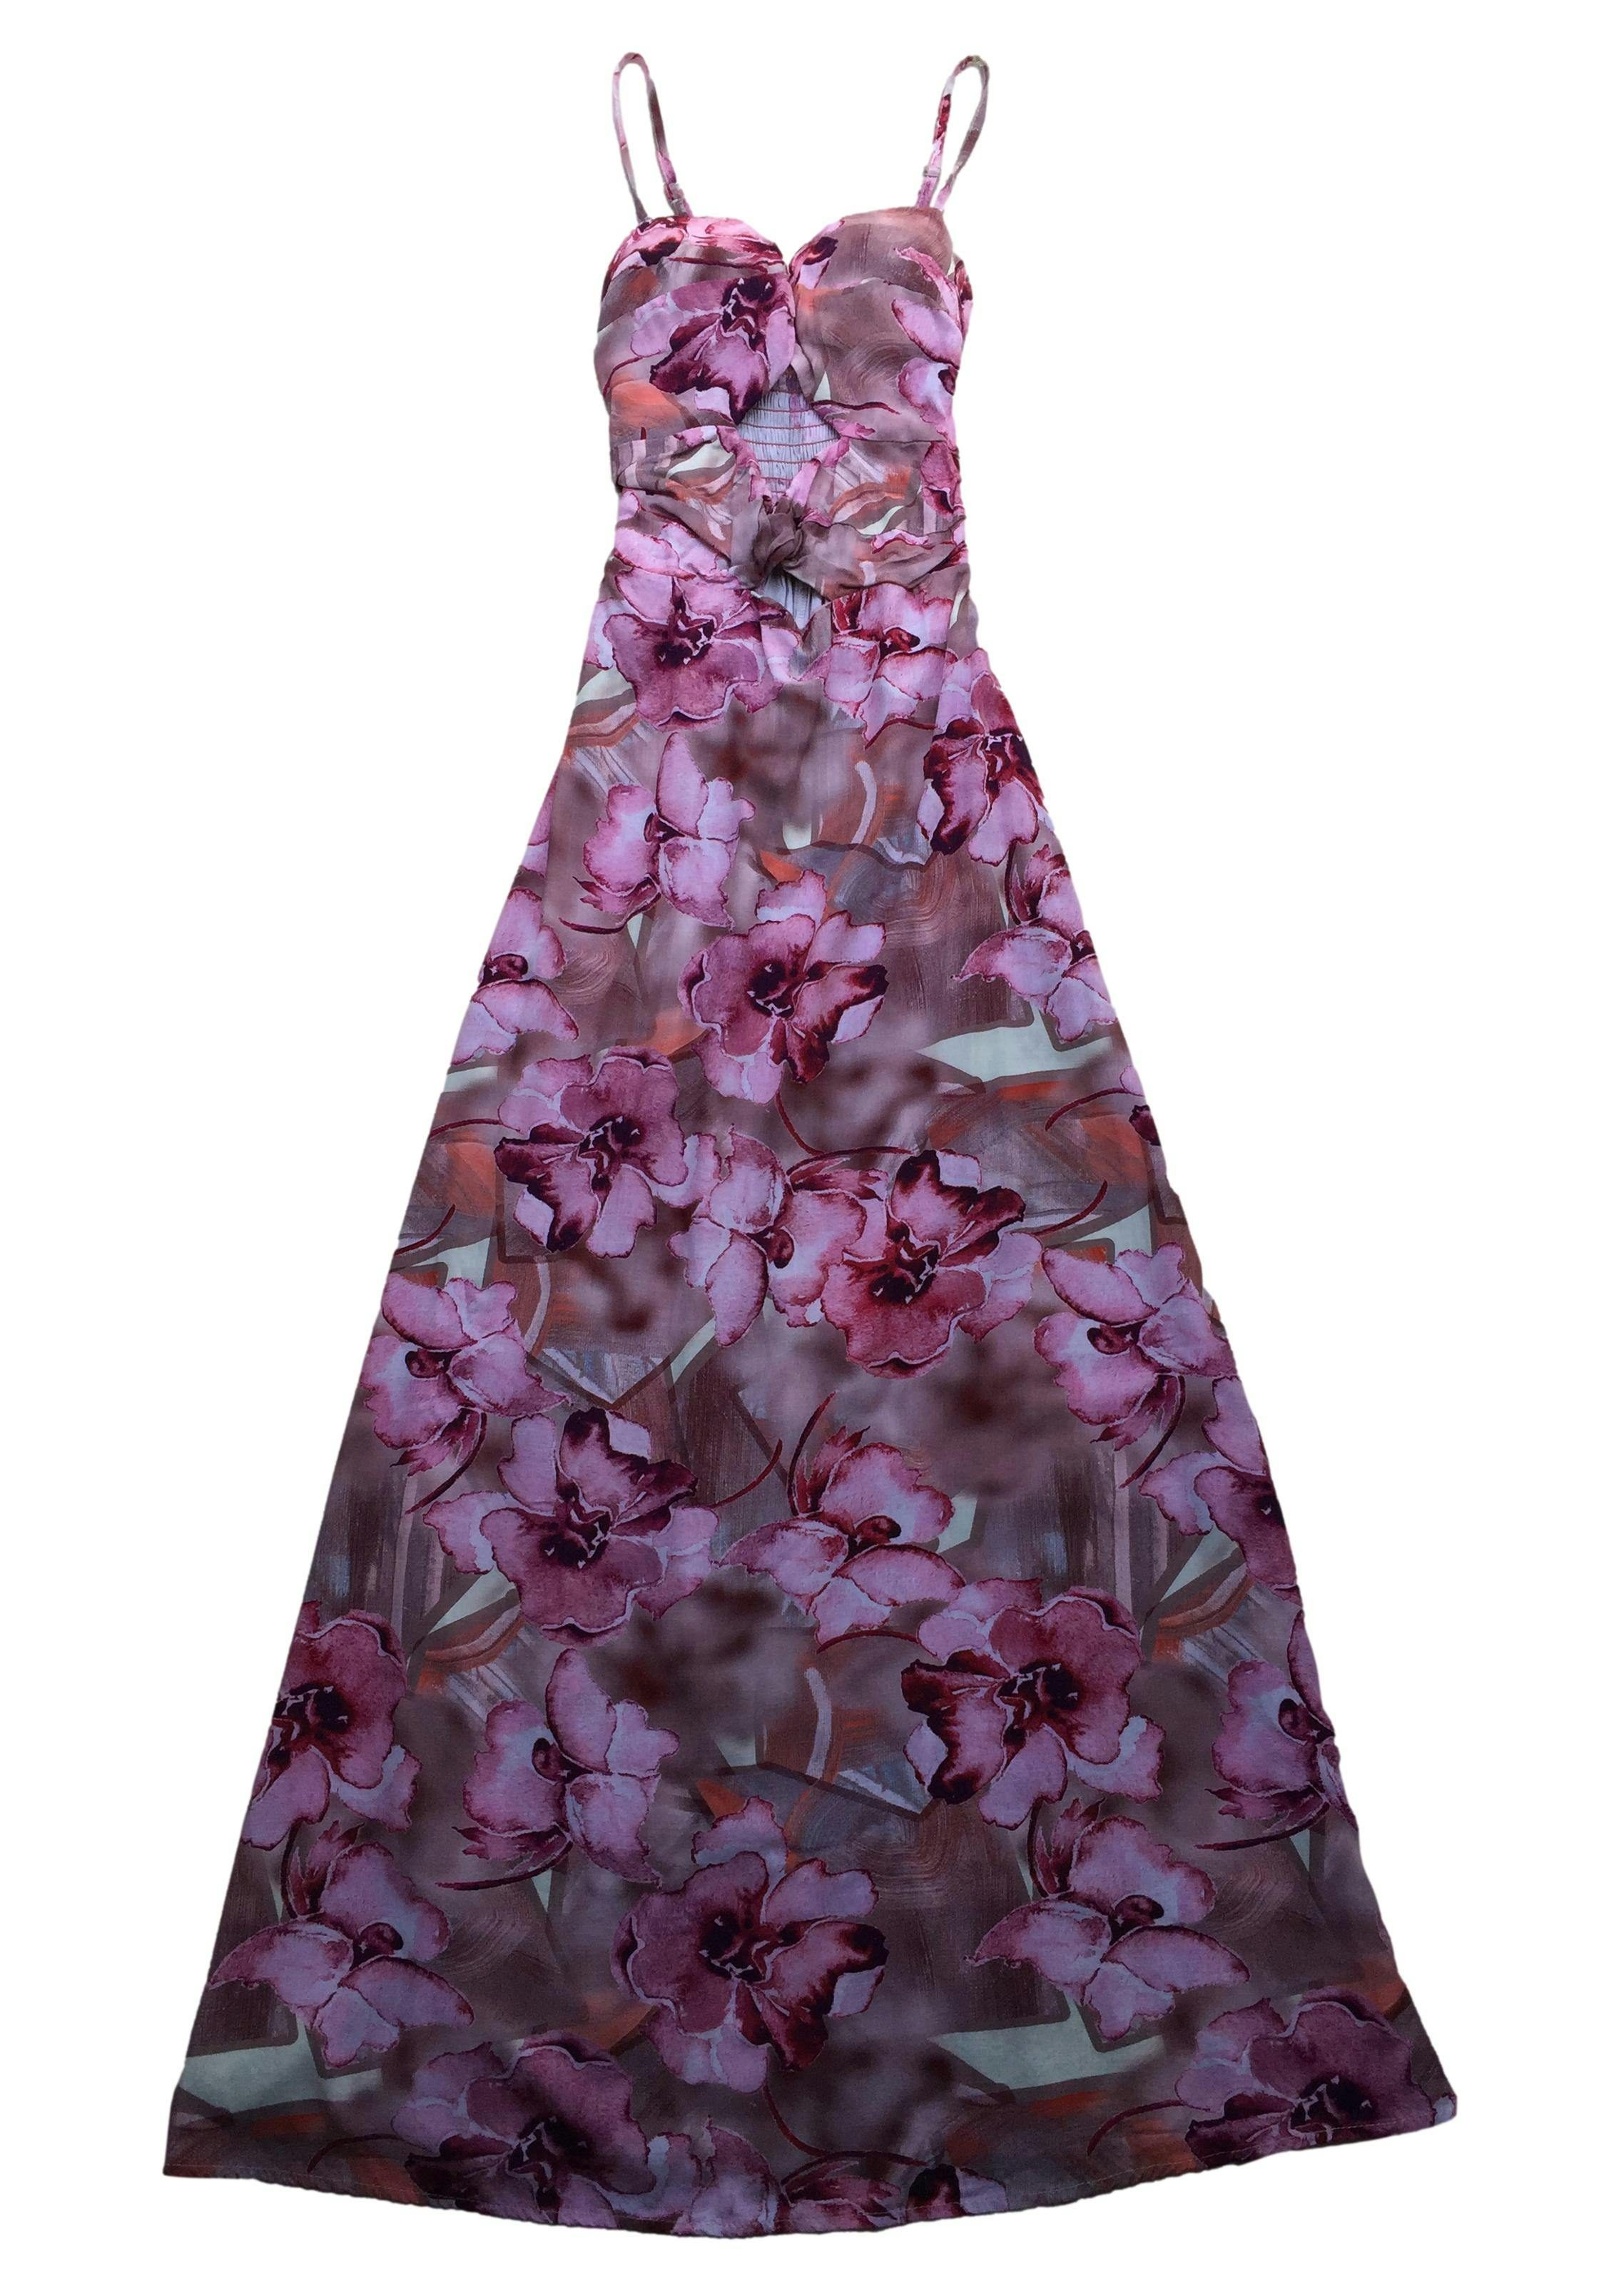 Vestido Bohem largo de flores rosa, delantero con copas y efecto nudo, espalda panal de abeja, tela fresco. Busto 80cm Largo 138cm